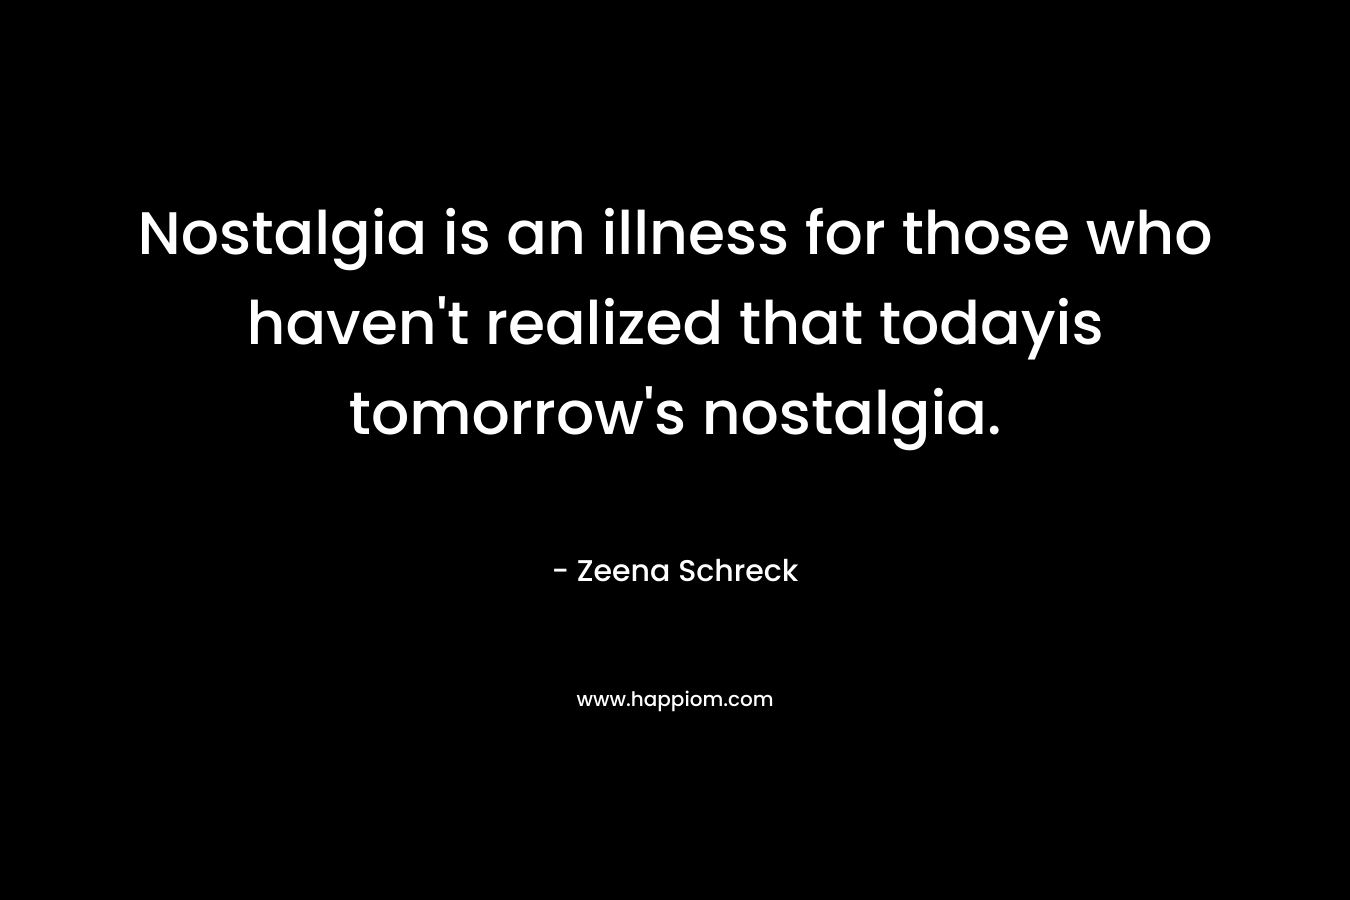 Nostalgia is an illness for those who haven't realized that todayis tomorrow's nostalgia.